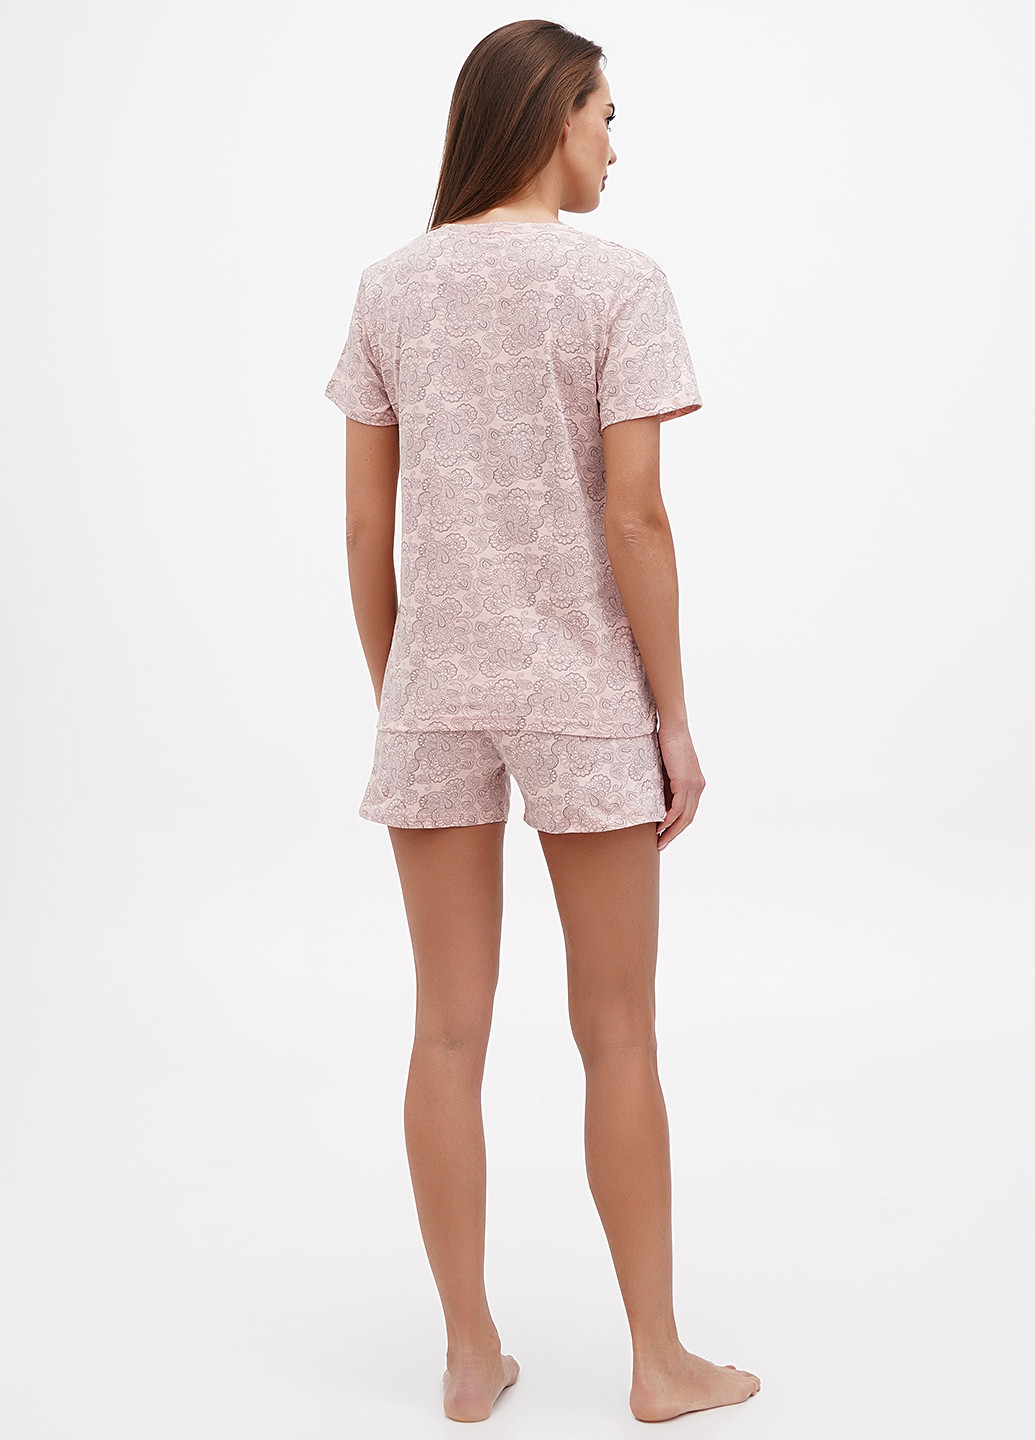 Светло-розовая всесезон пижама (футболка, шорты) футболка + шорты Lucci